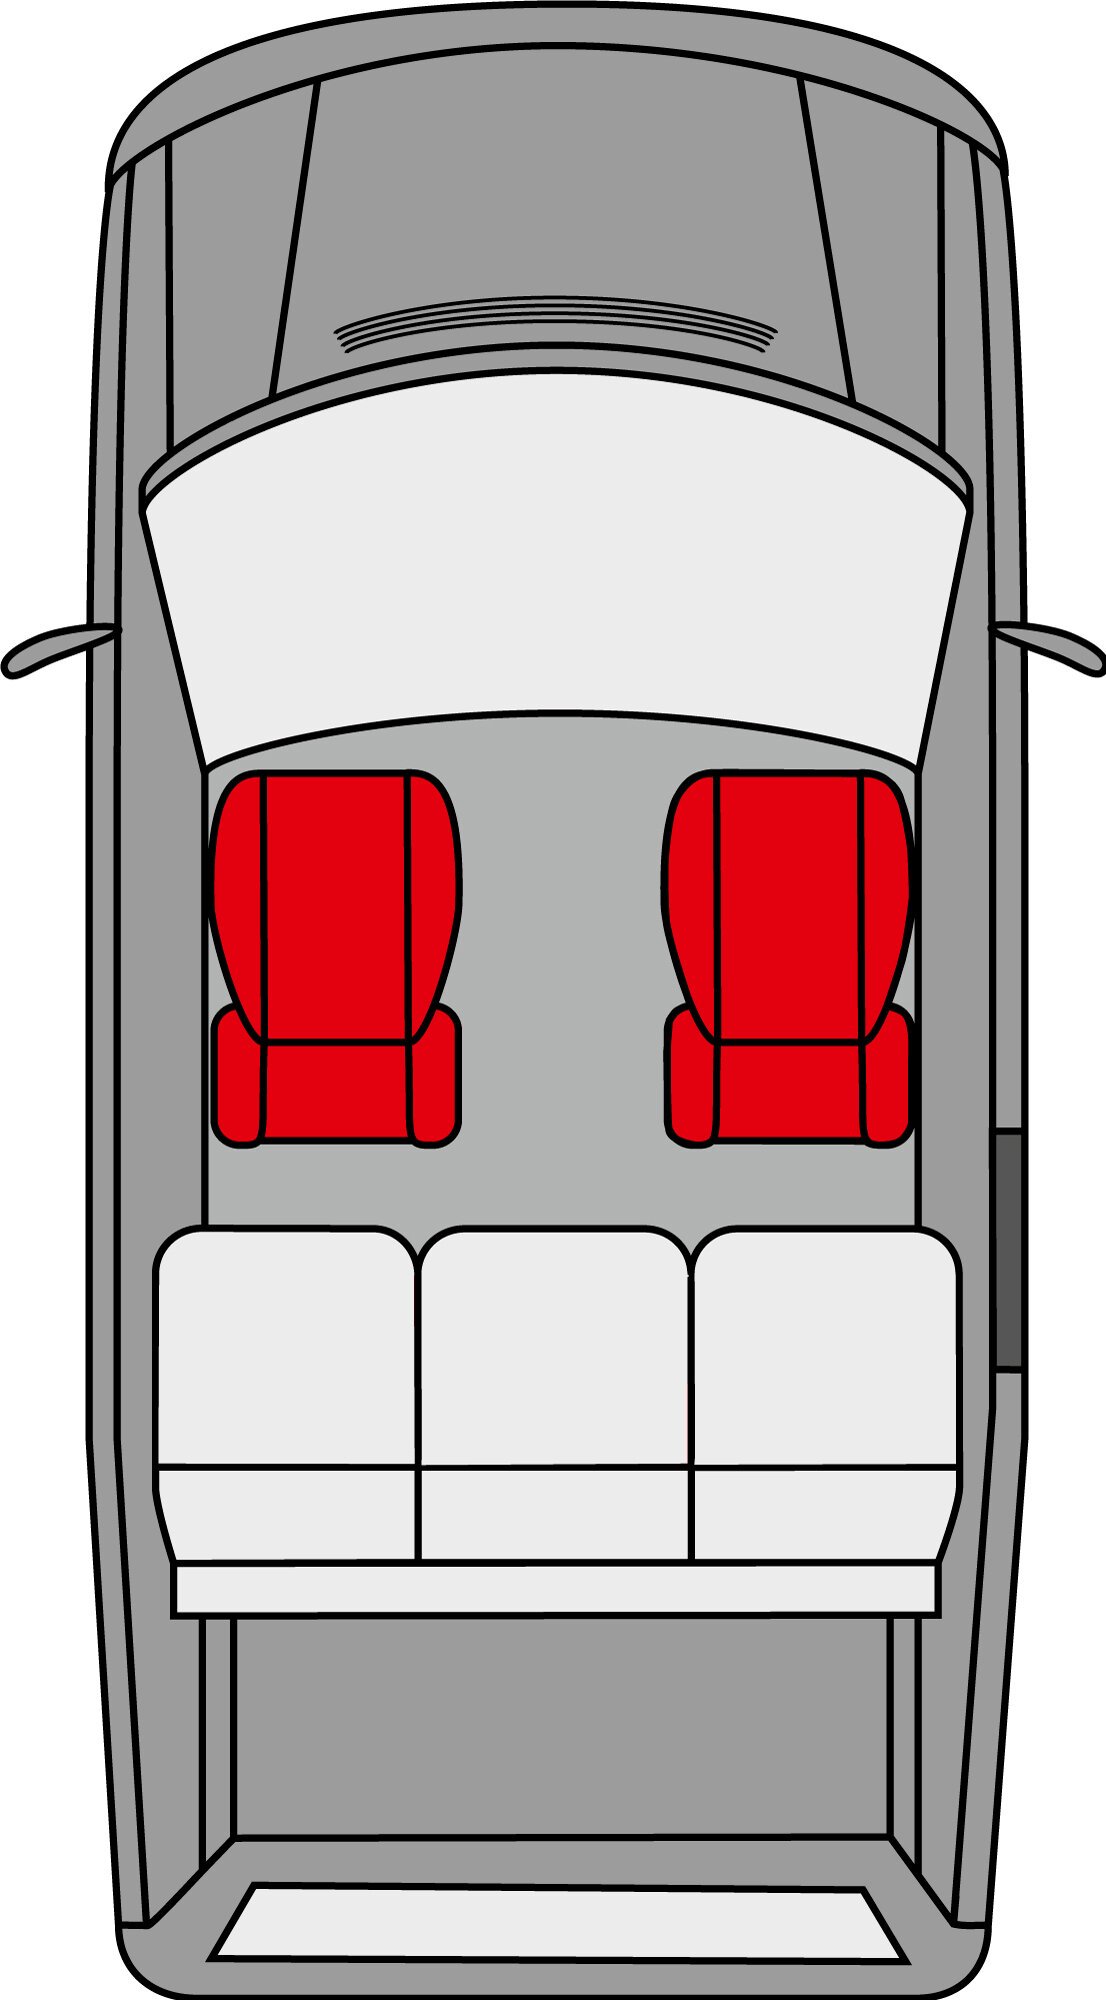 Autositzbezug Modulo Highback Einzelsitzbezug